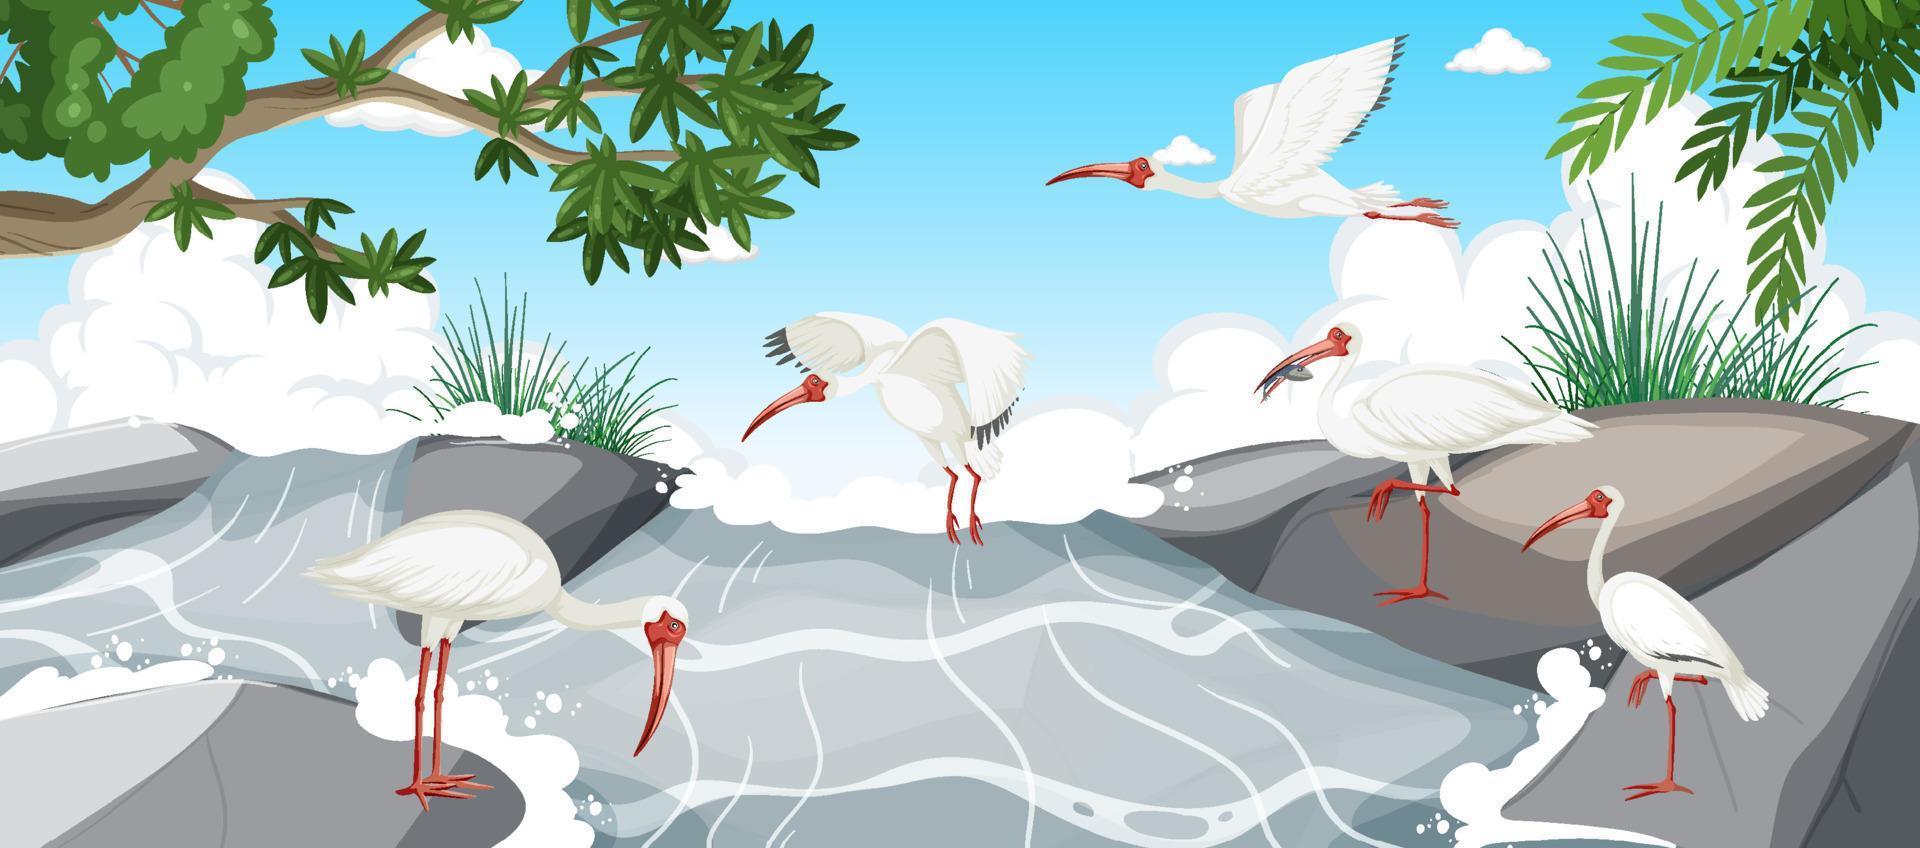 amerikanische weiße ibis-gruppe im wald vektor